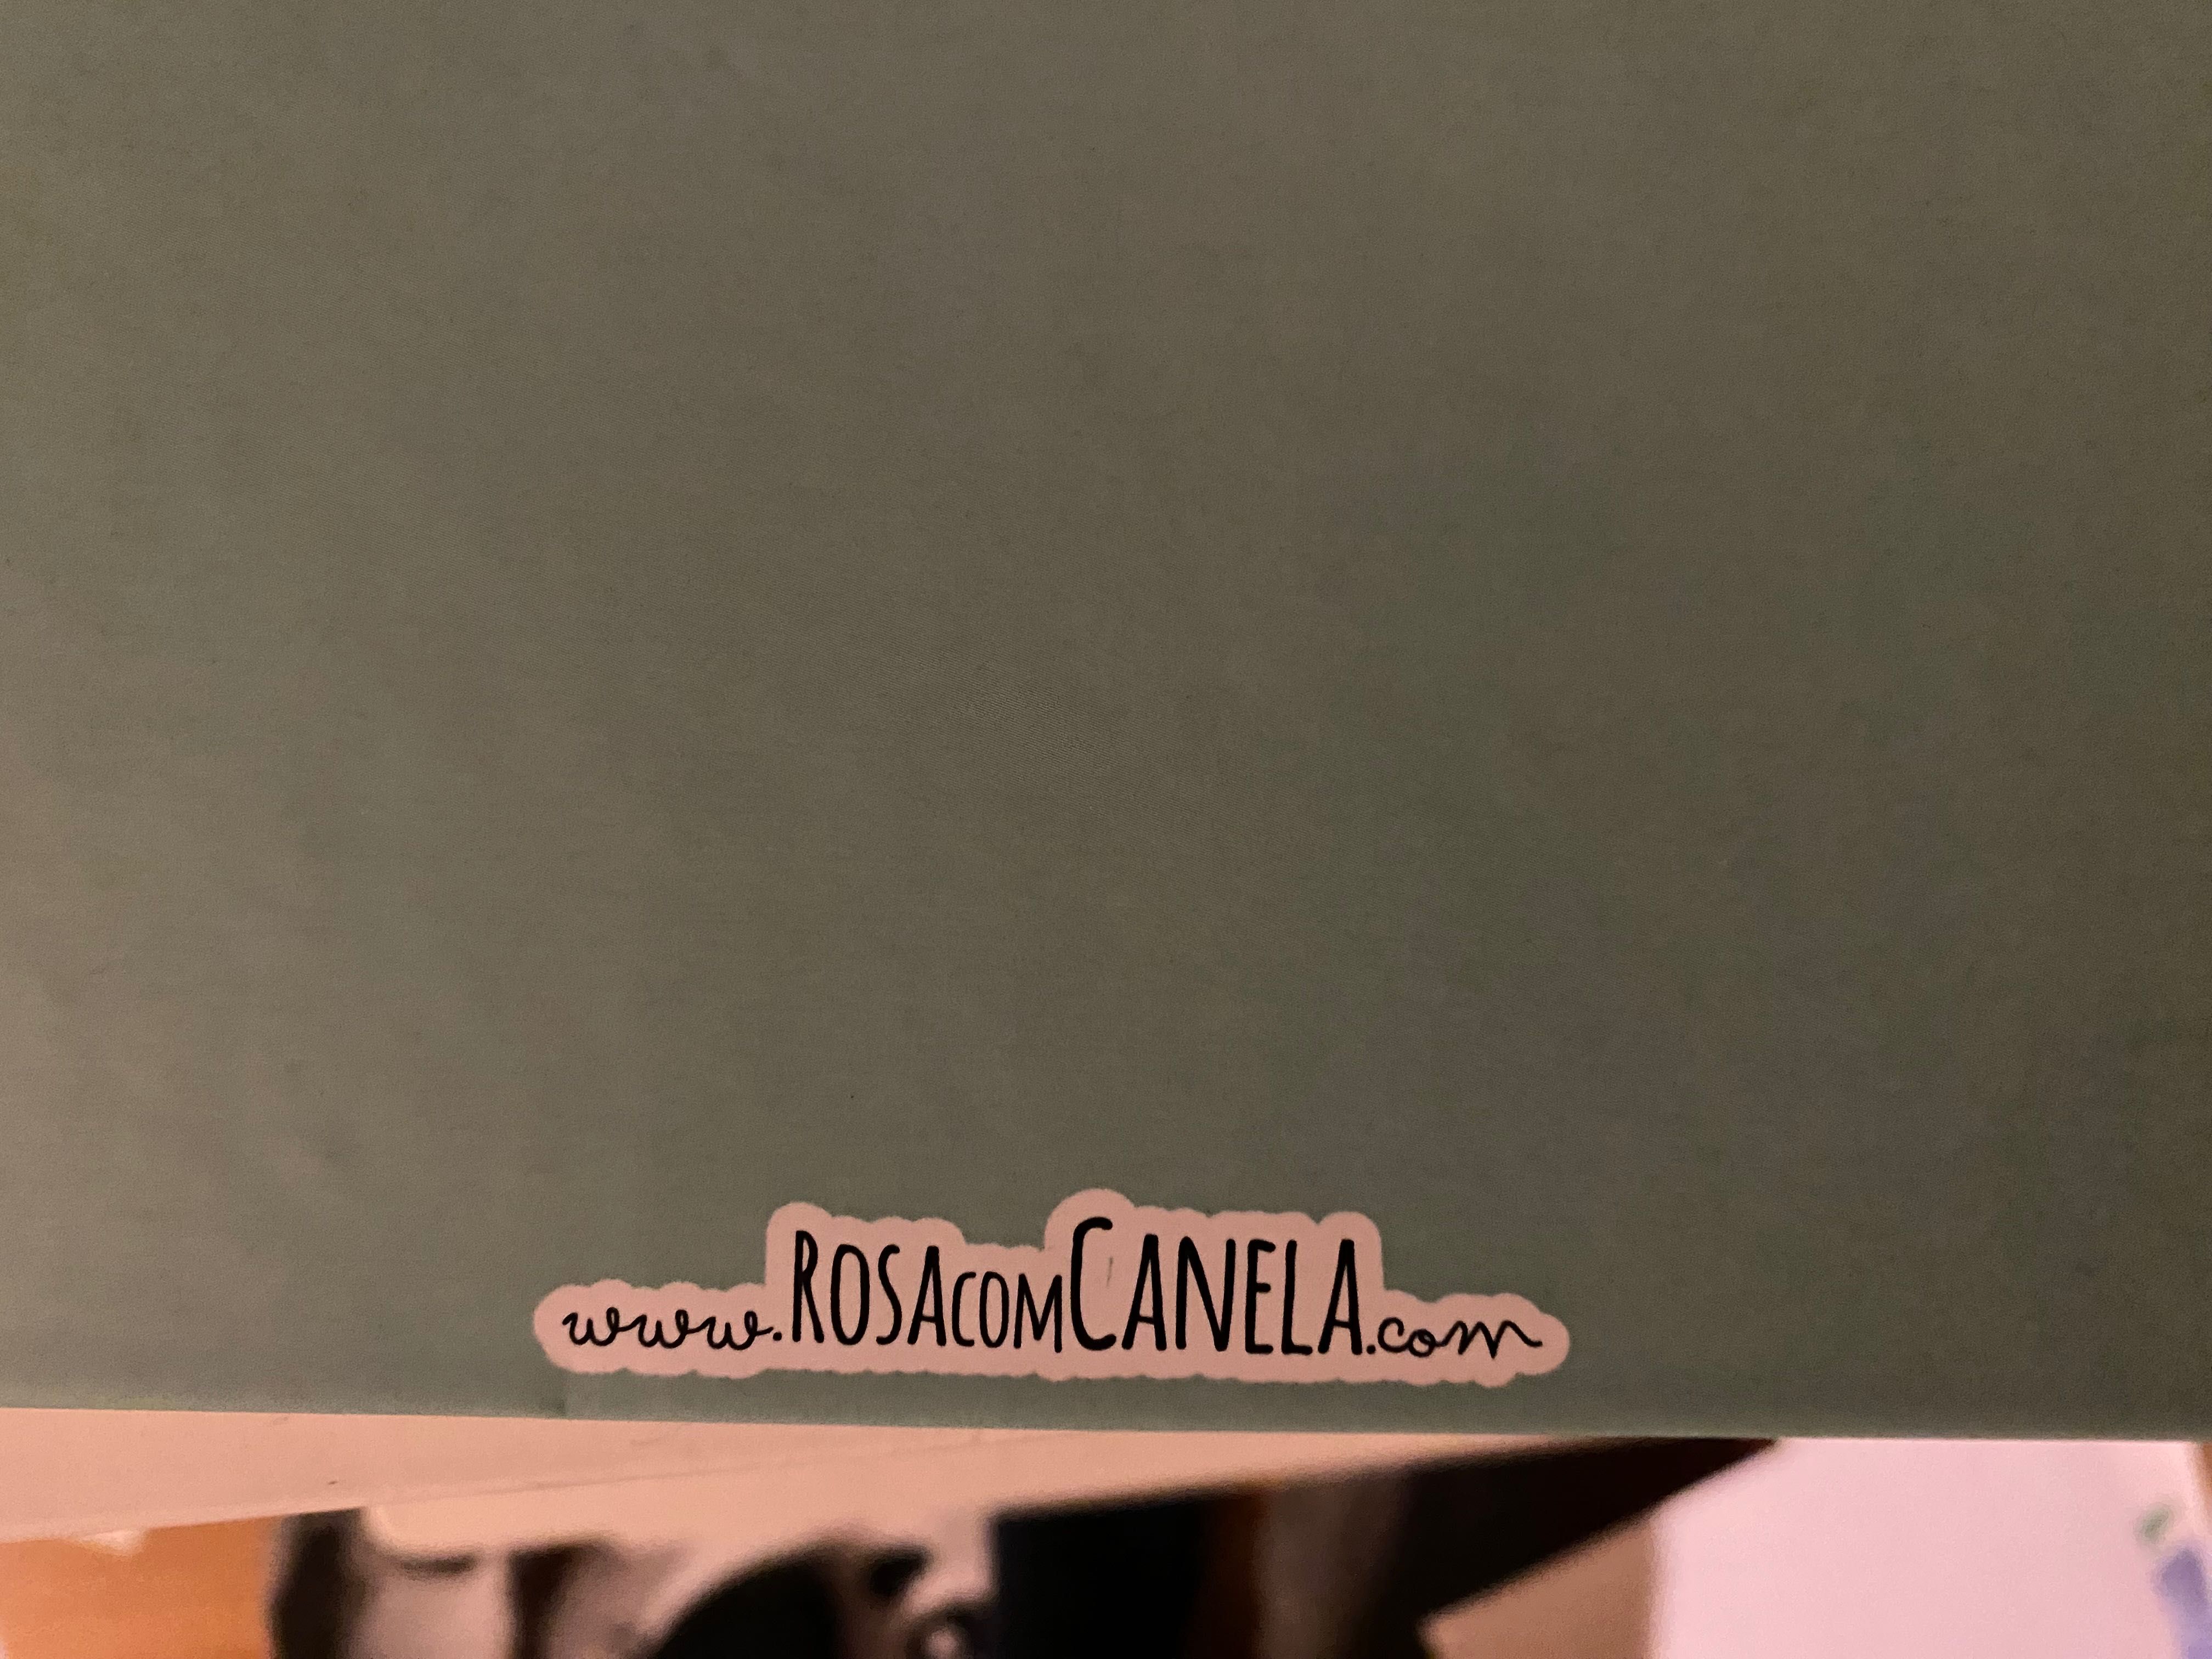 Álbum A4 babybook & Rosa com Canela